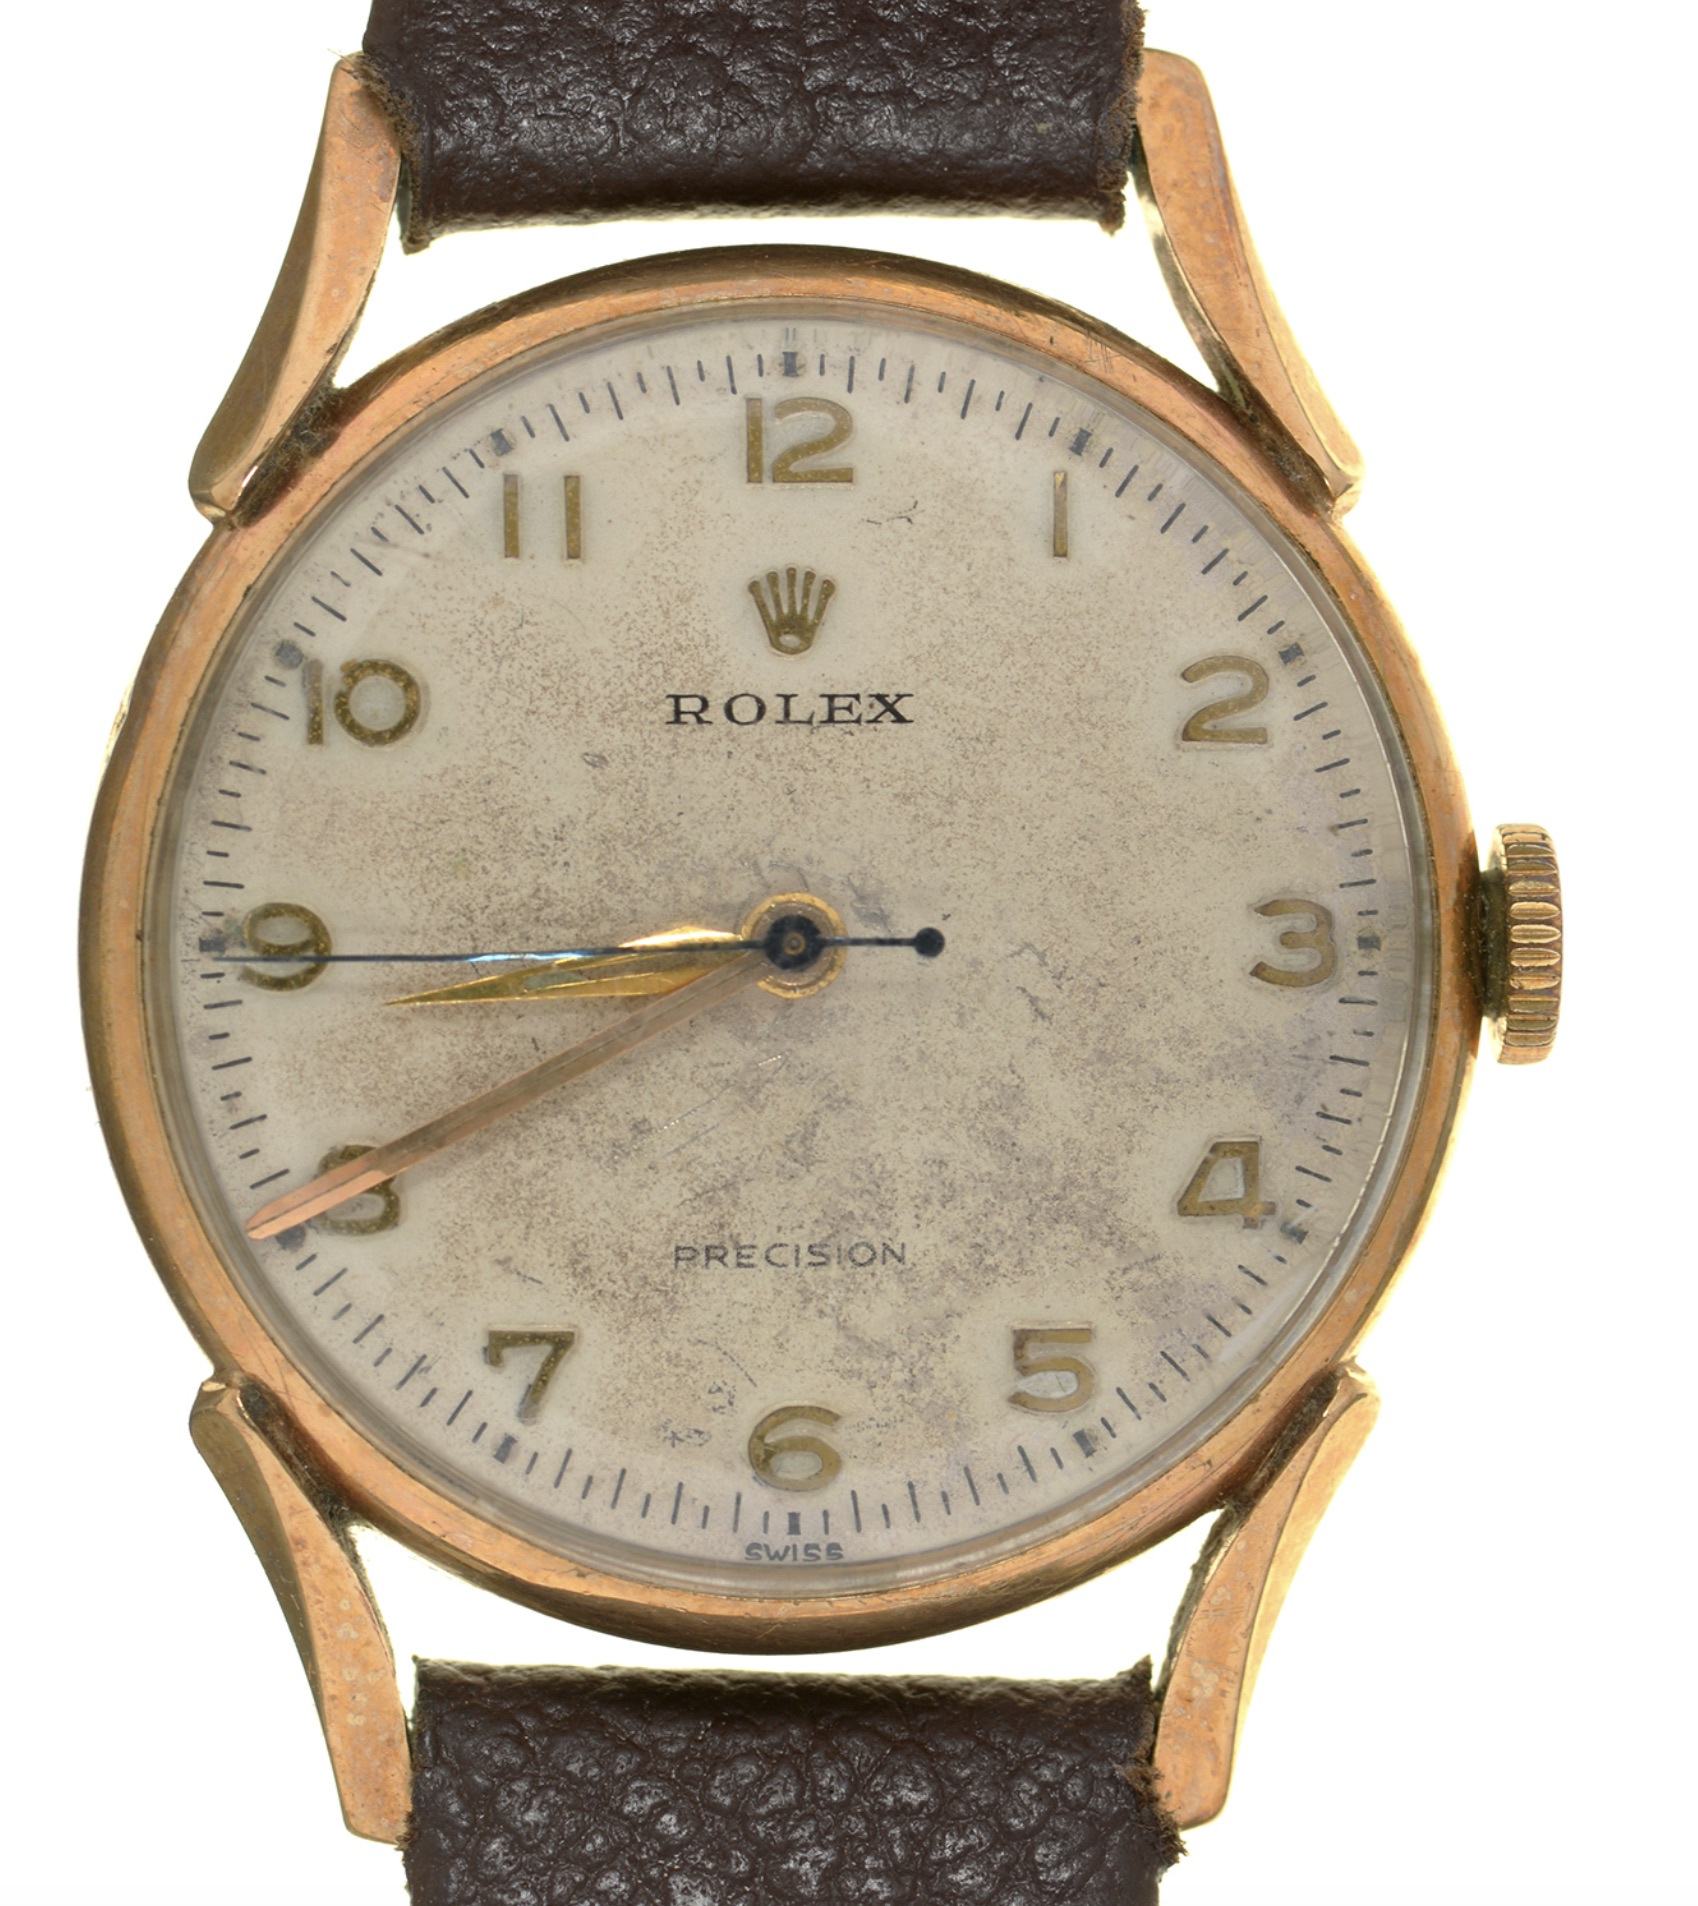 Rolex gold gentleman's wristwatch